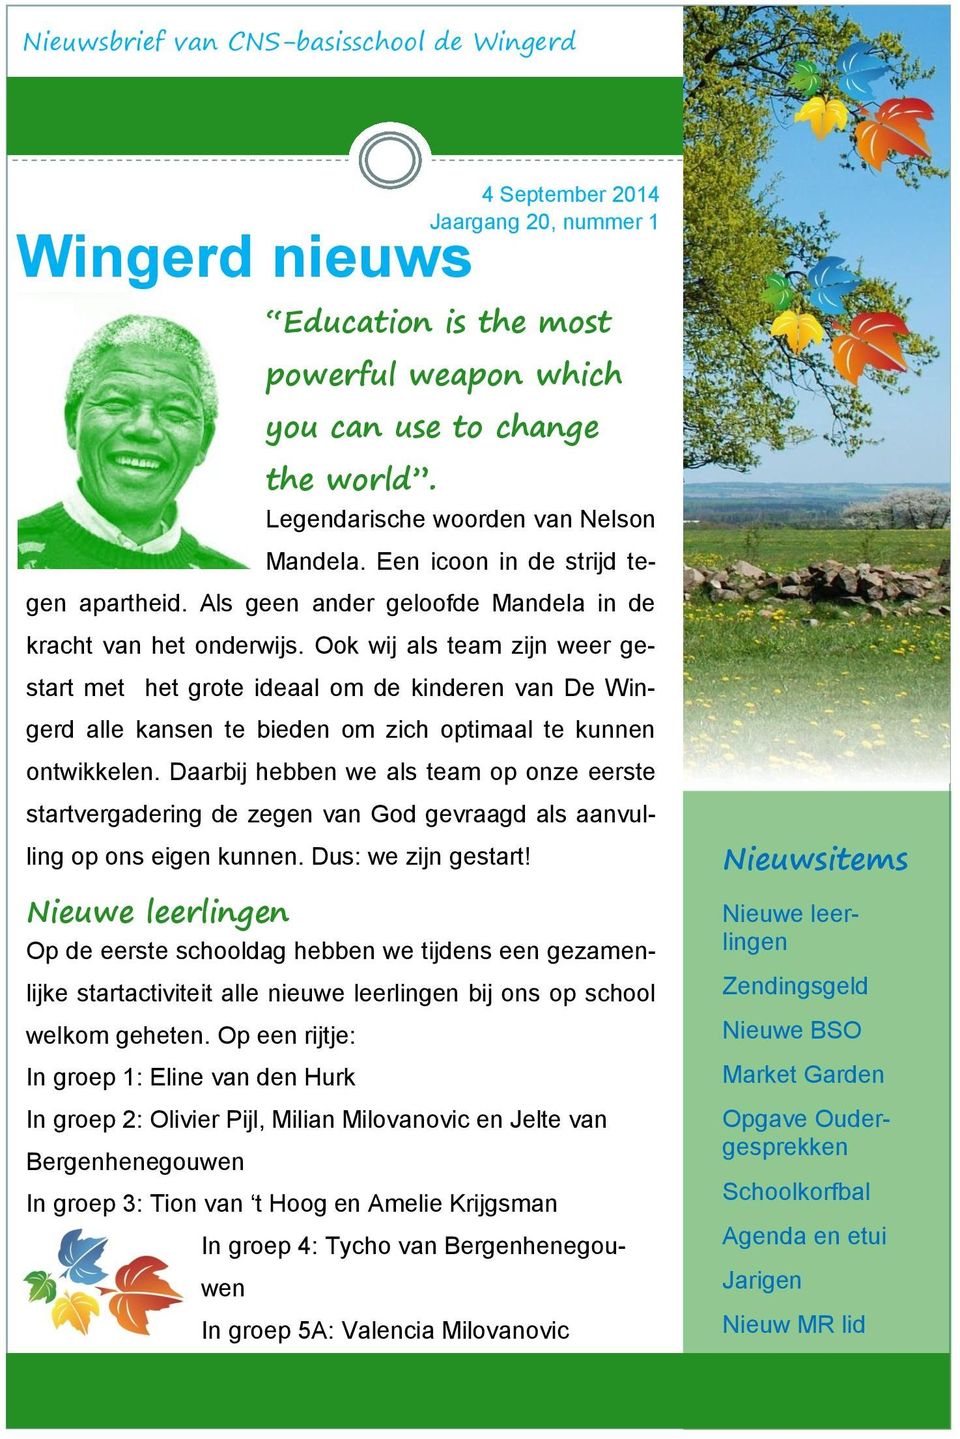 Ook wij als team zijn weer gestart met het grote ideaal om de kinderen van De Wingerd alle kansen te bieden om zich optimaal te kunnen ontwikkelen.